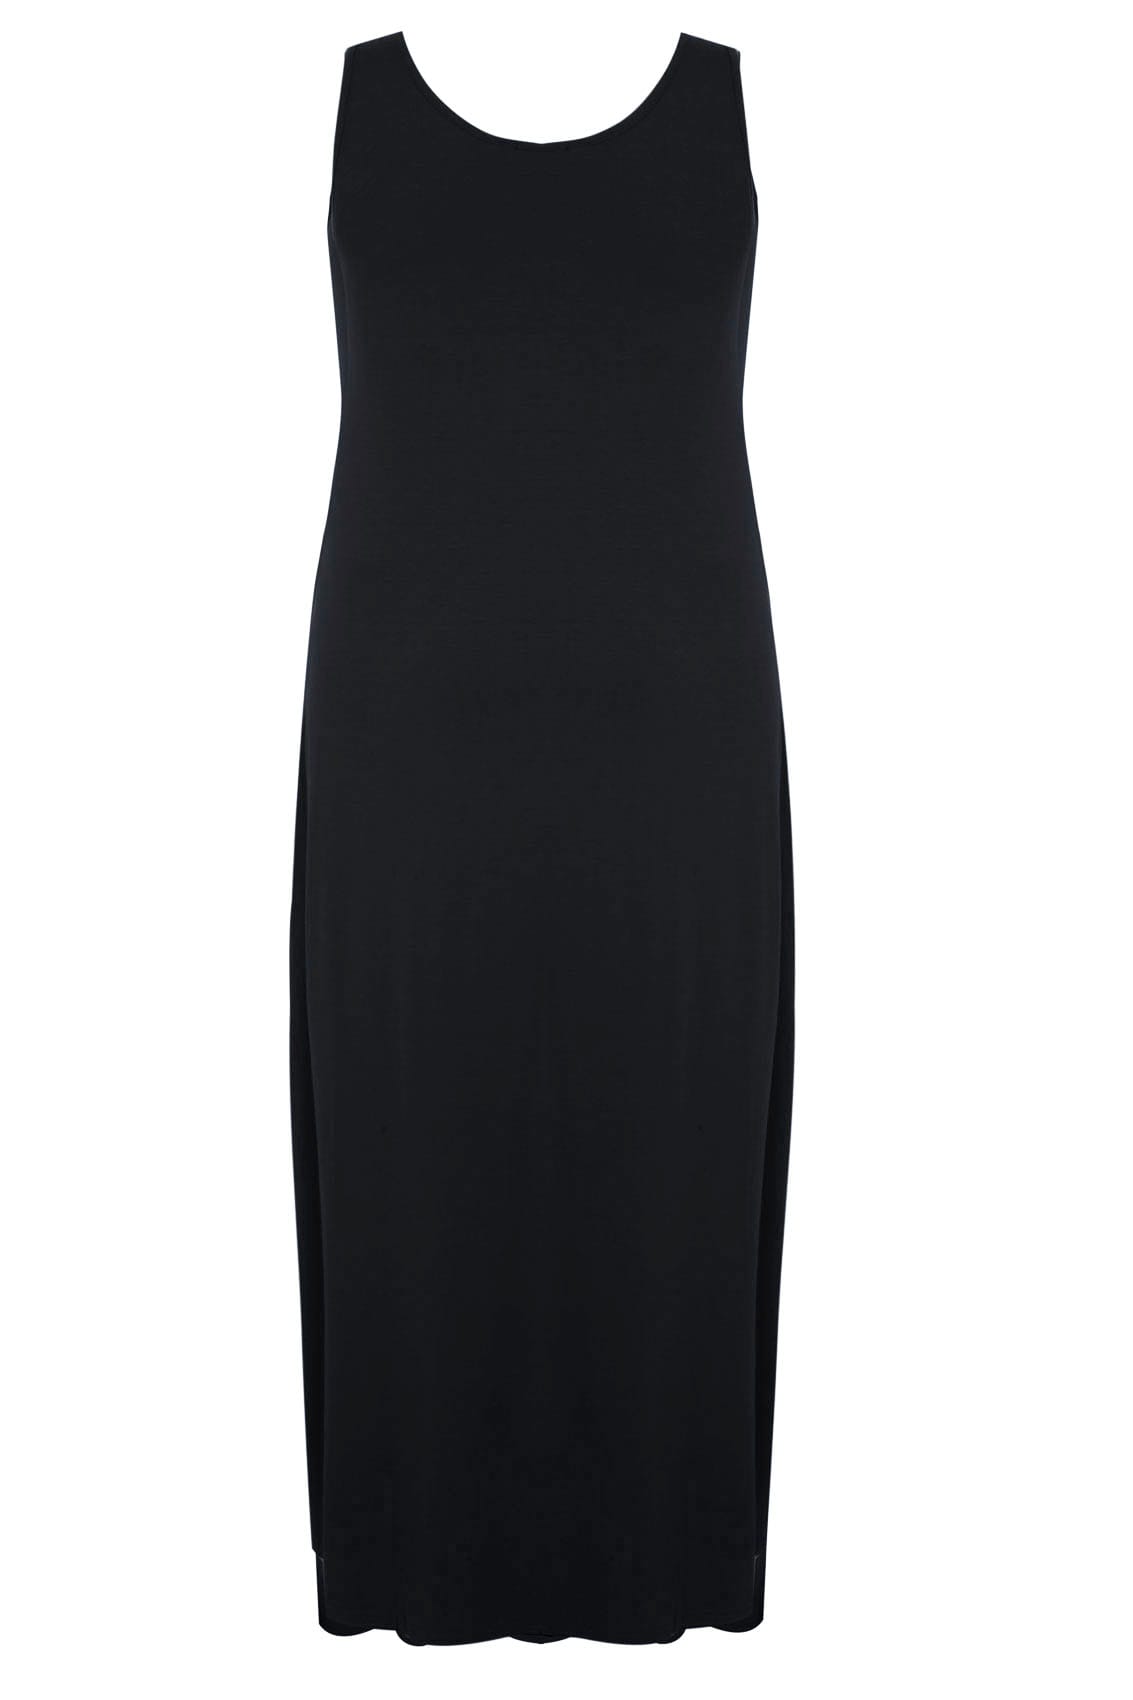 black plain dress long